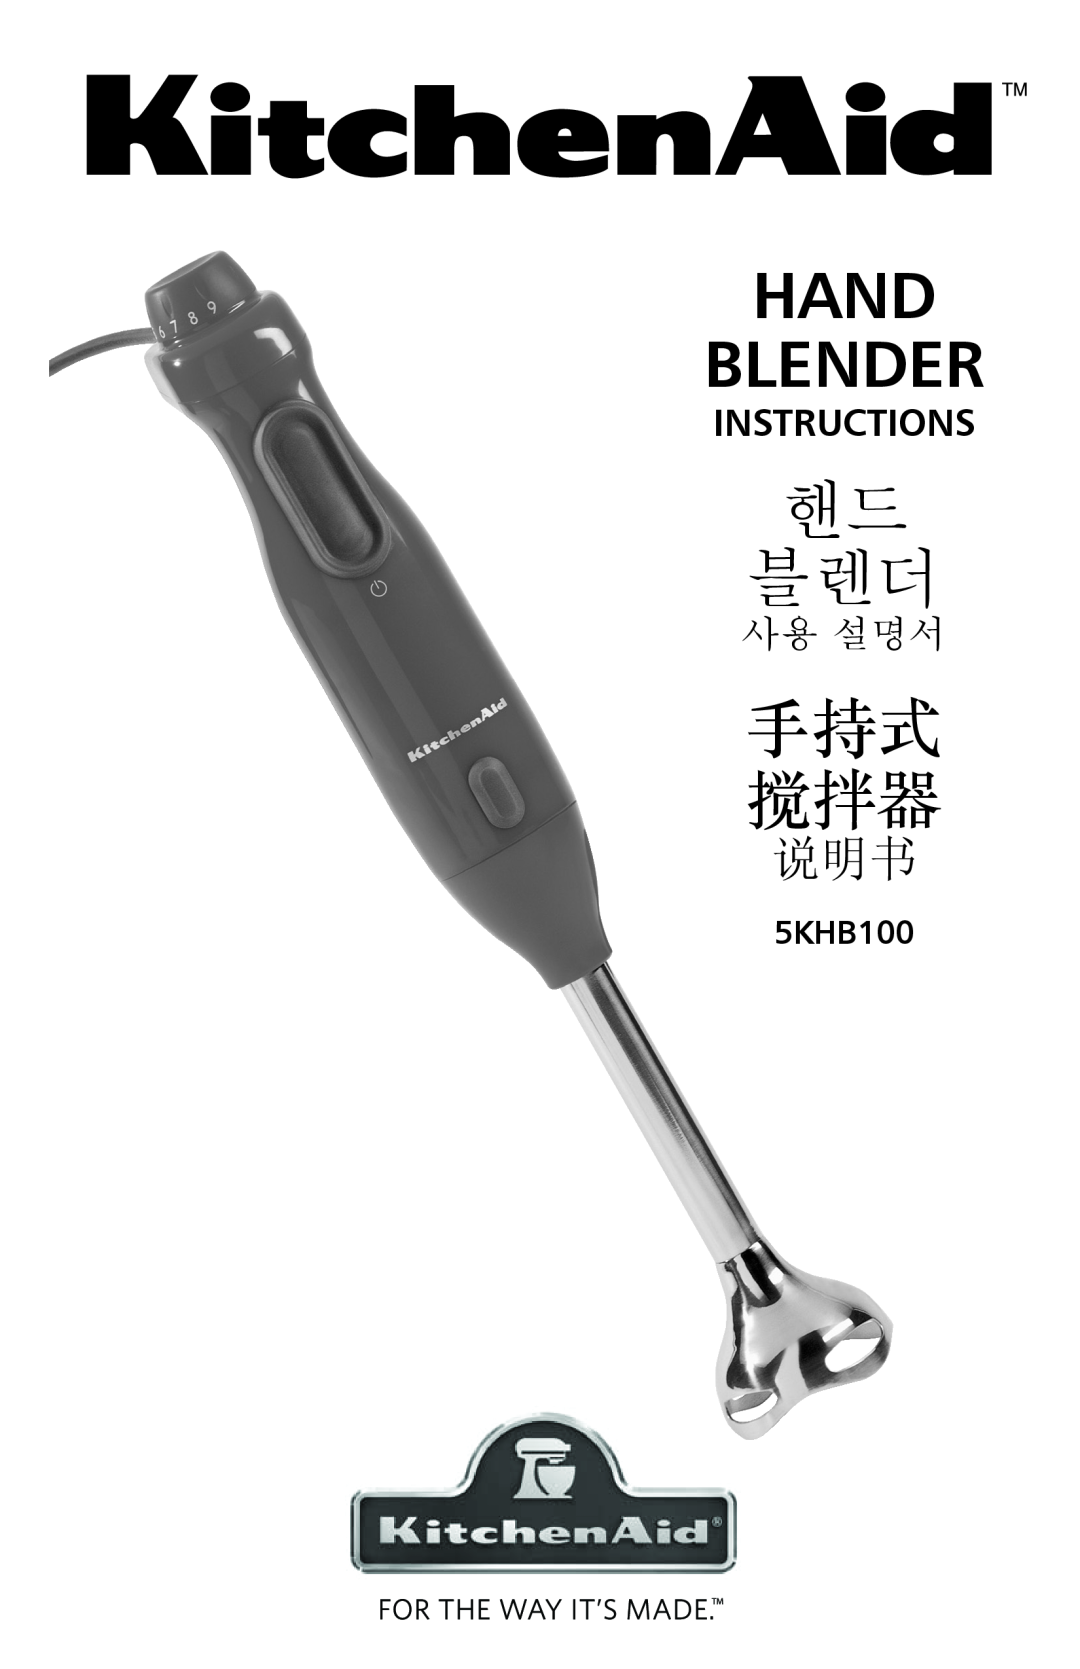 KitchenAid 5KHB100 manual Hand Blender, 핸드 블렌더, 手持式 搅拌器, Instructions, 사용 설명서 